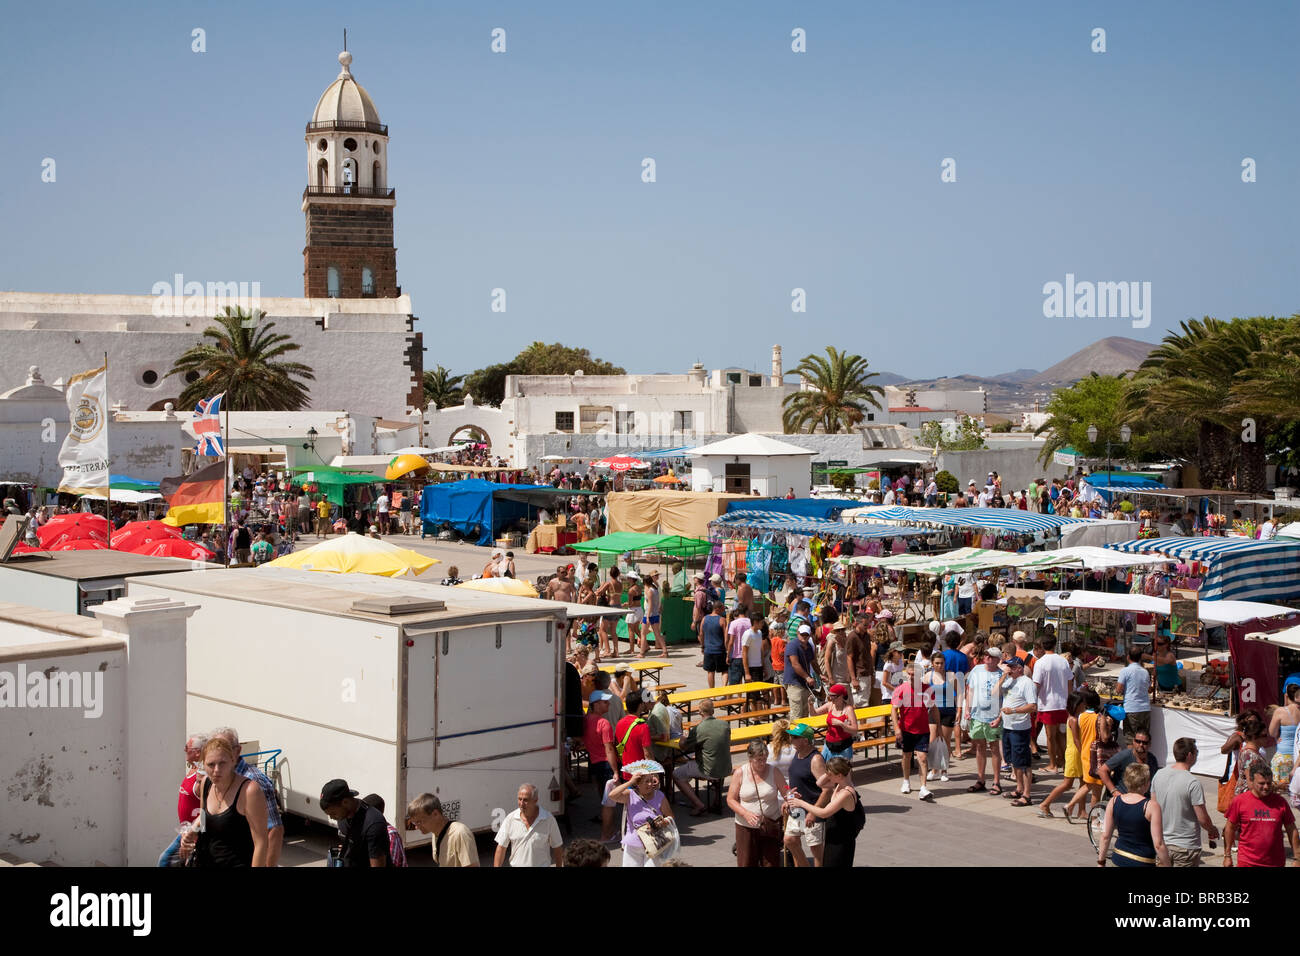 La folla al mercato di domenica con la torre campanaria di Iglesia de San Miguel in background, Teguise, Lanzarote Foto Stock